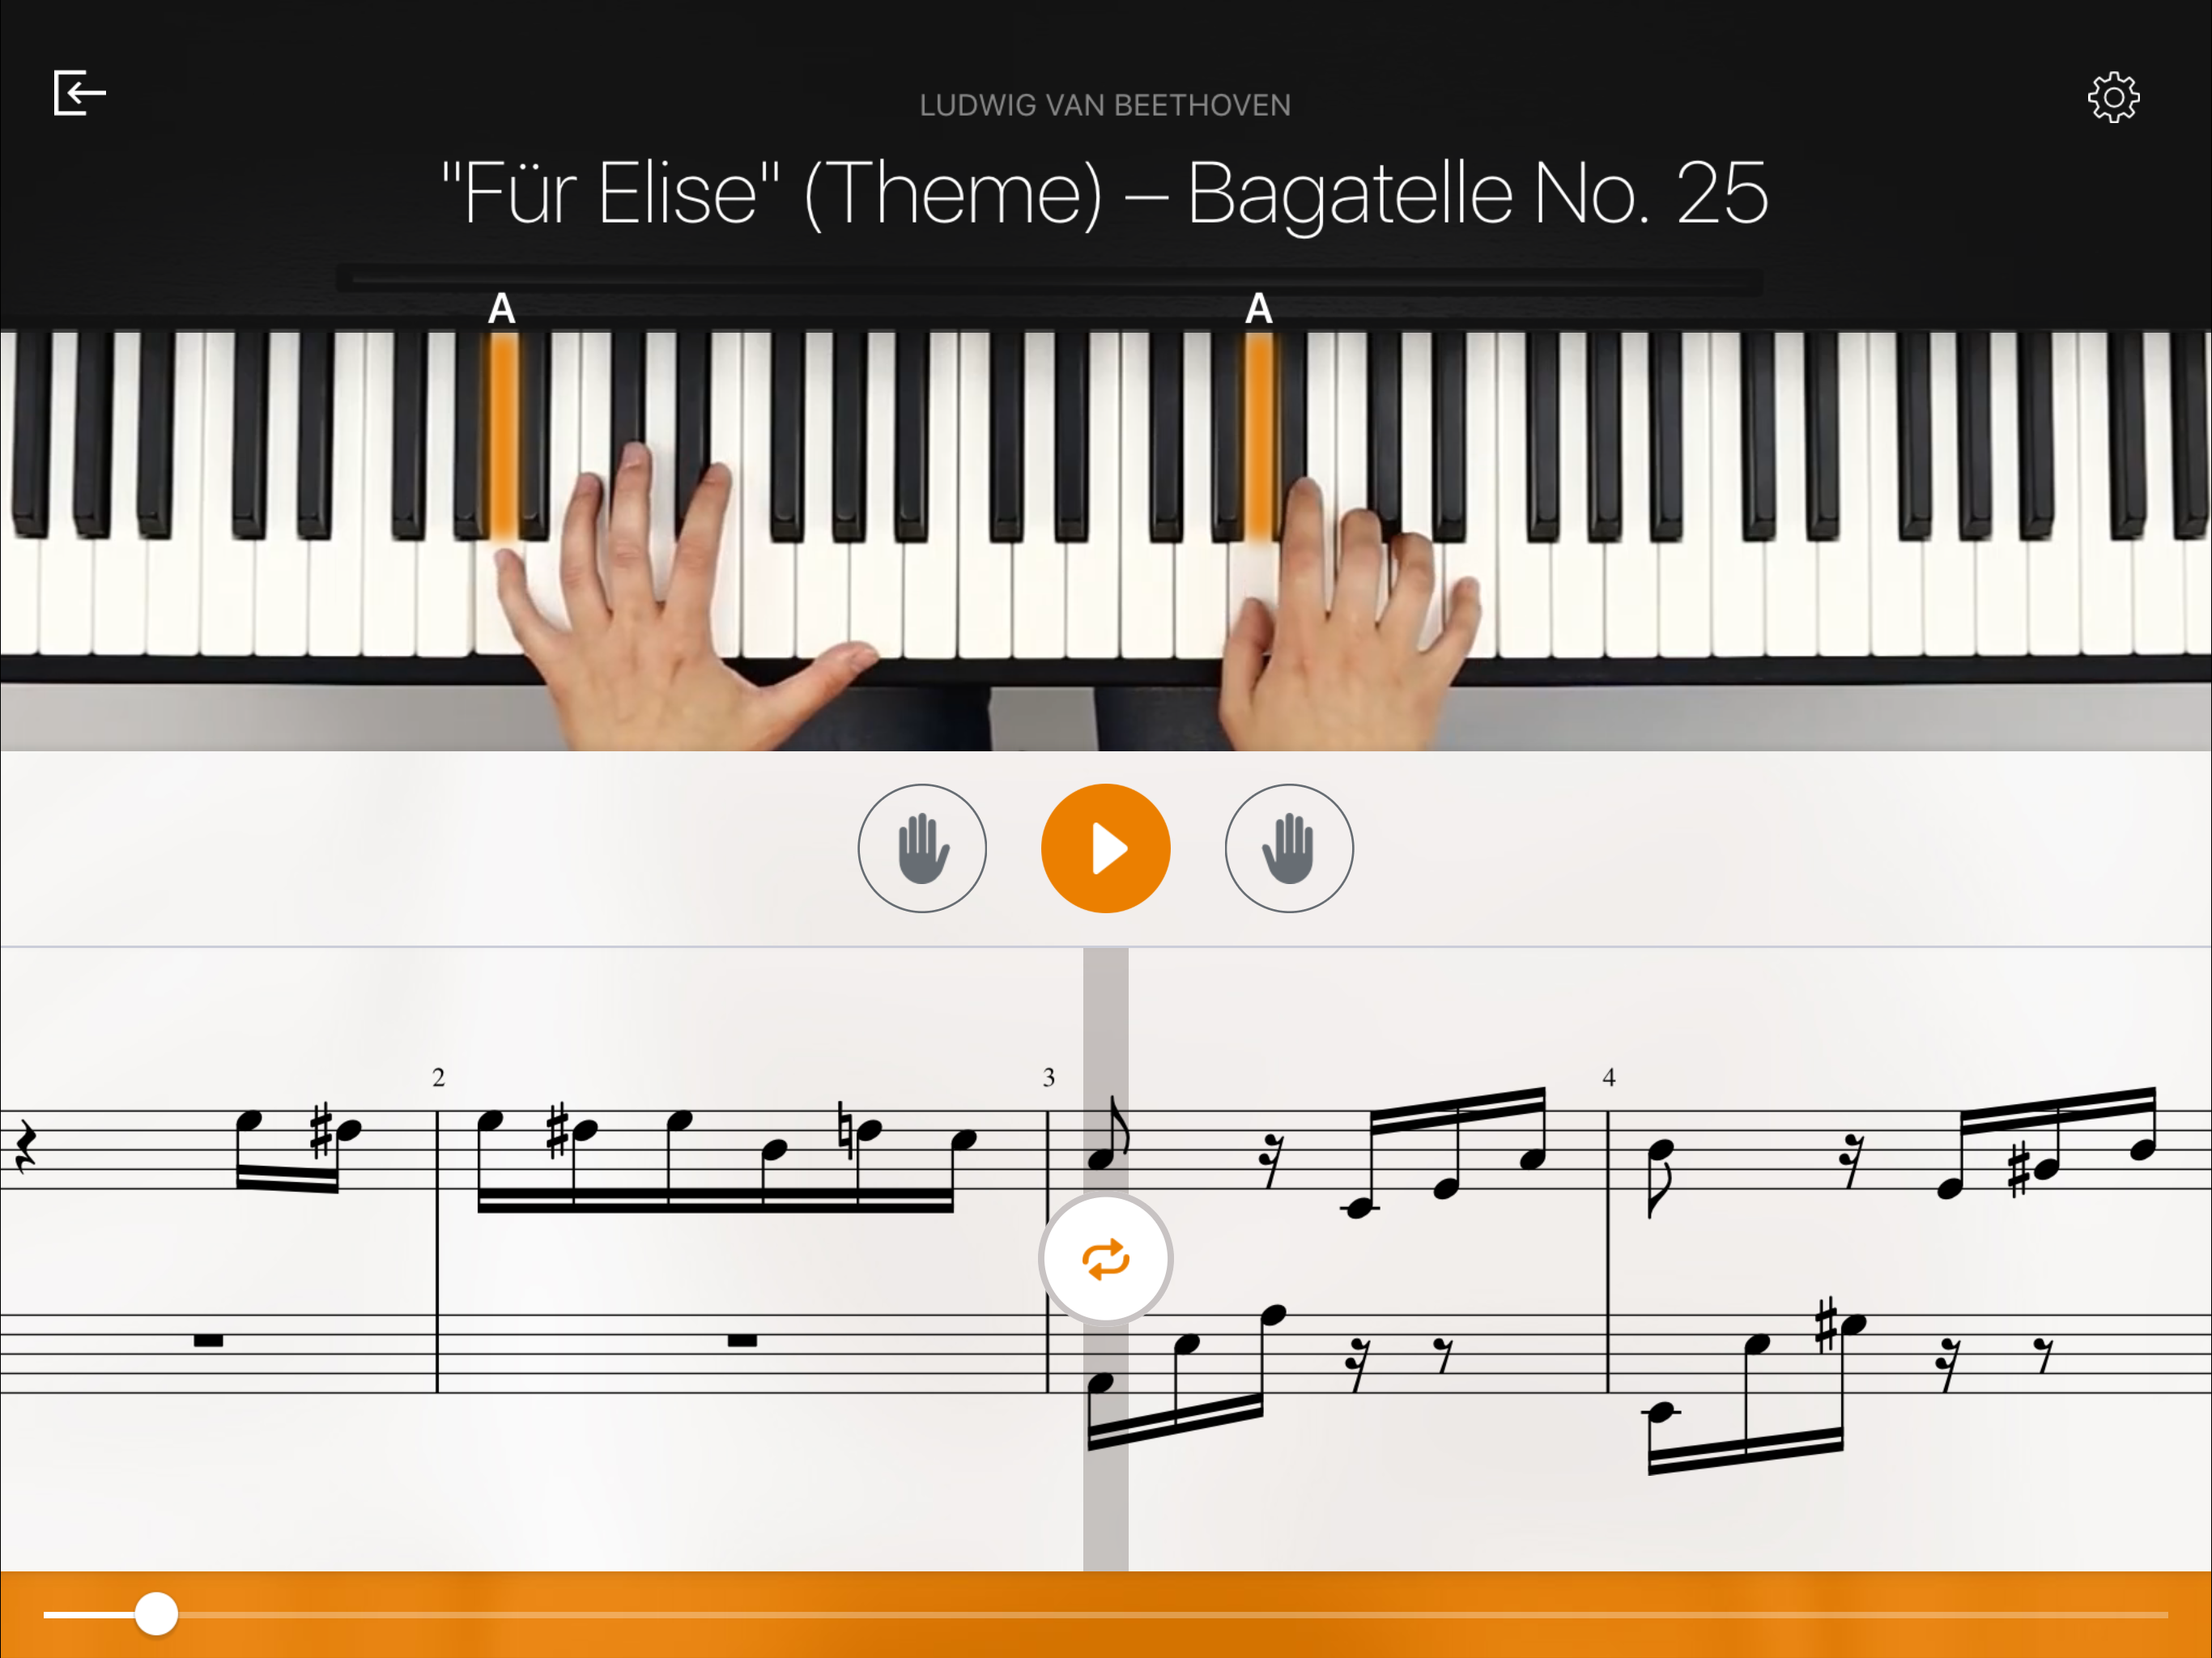 Misterio Crónico carencia flowkey, un innovador método para aprender piano desde casa - Libertad  Digital